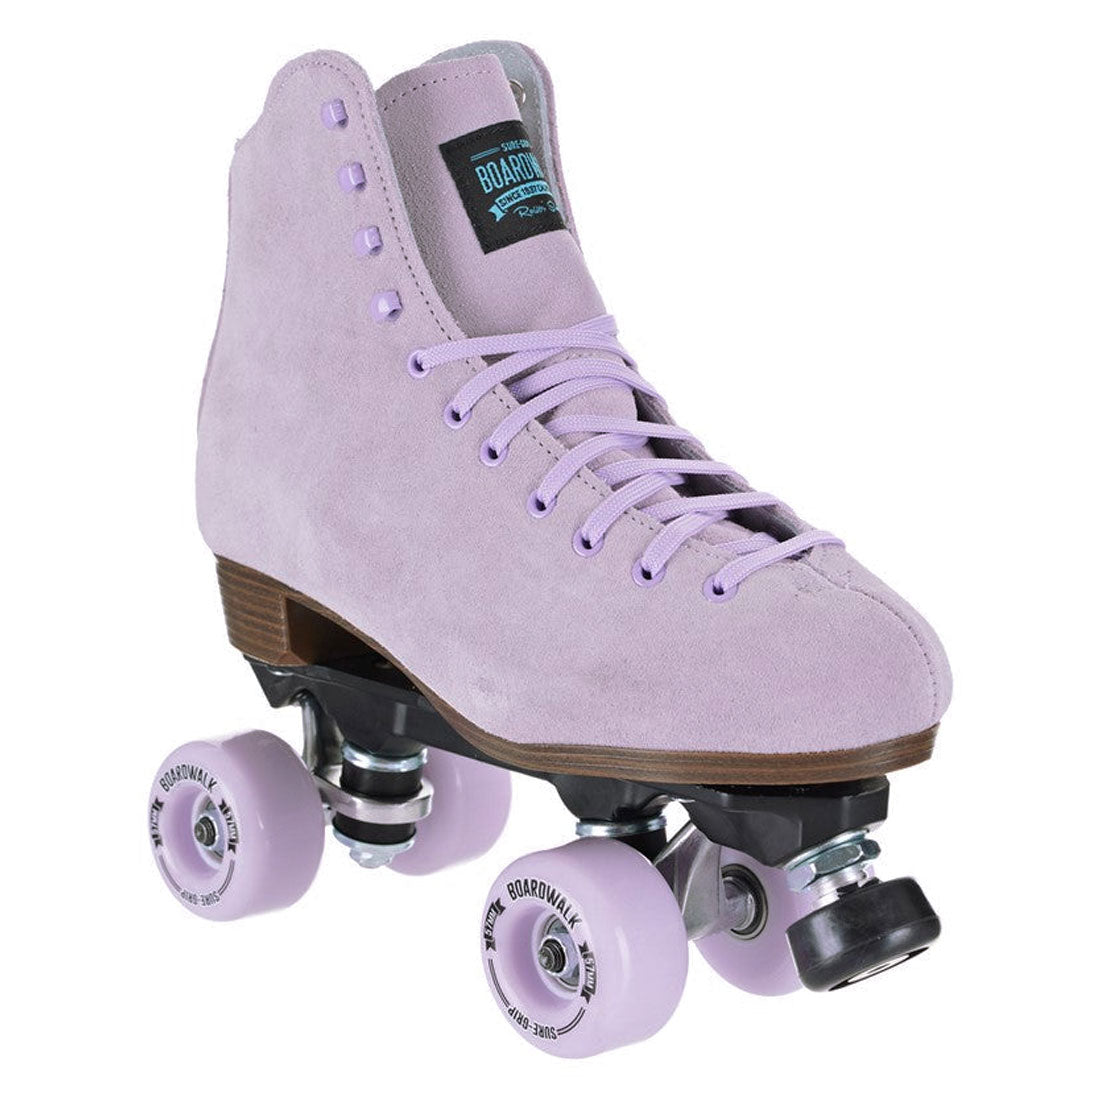 Sure-Grip Boardwalk Skate - Lavender Roller Skates